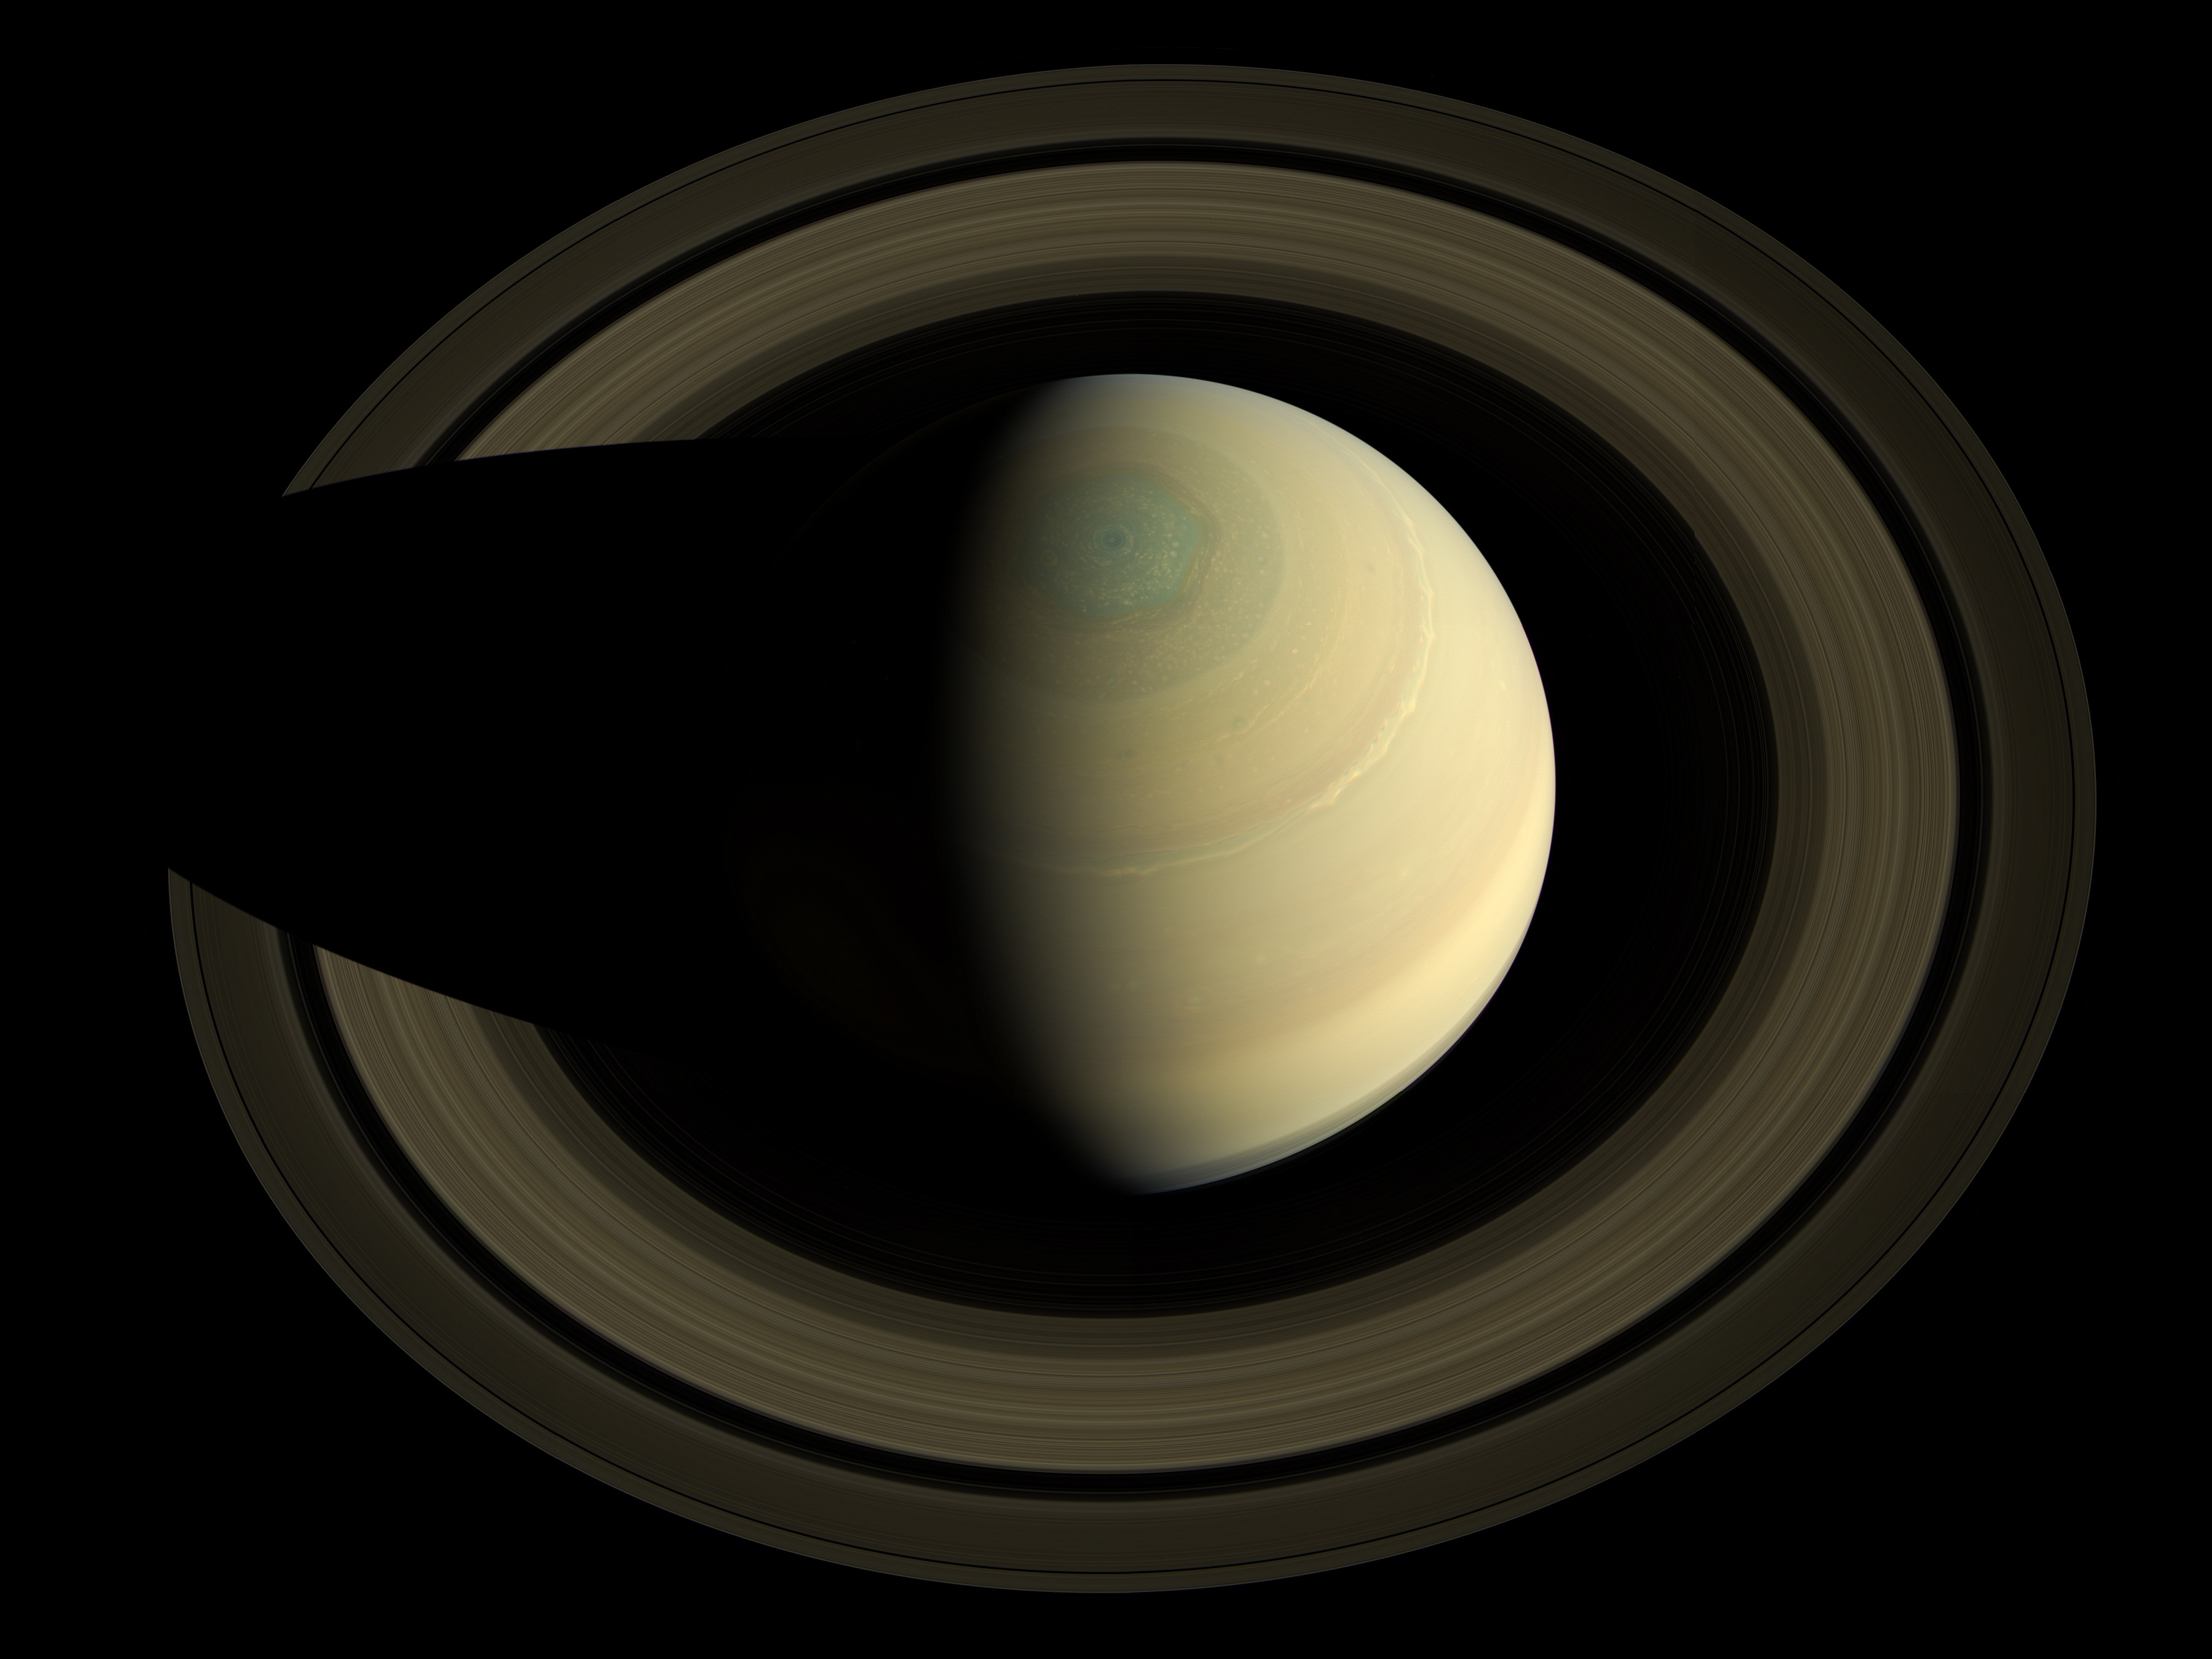 Saturn equinox photo